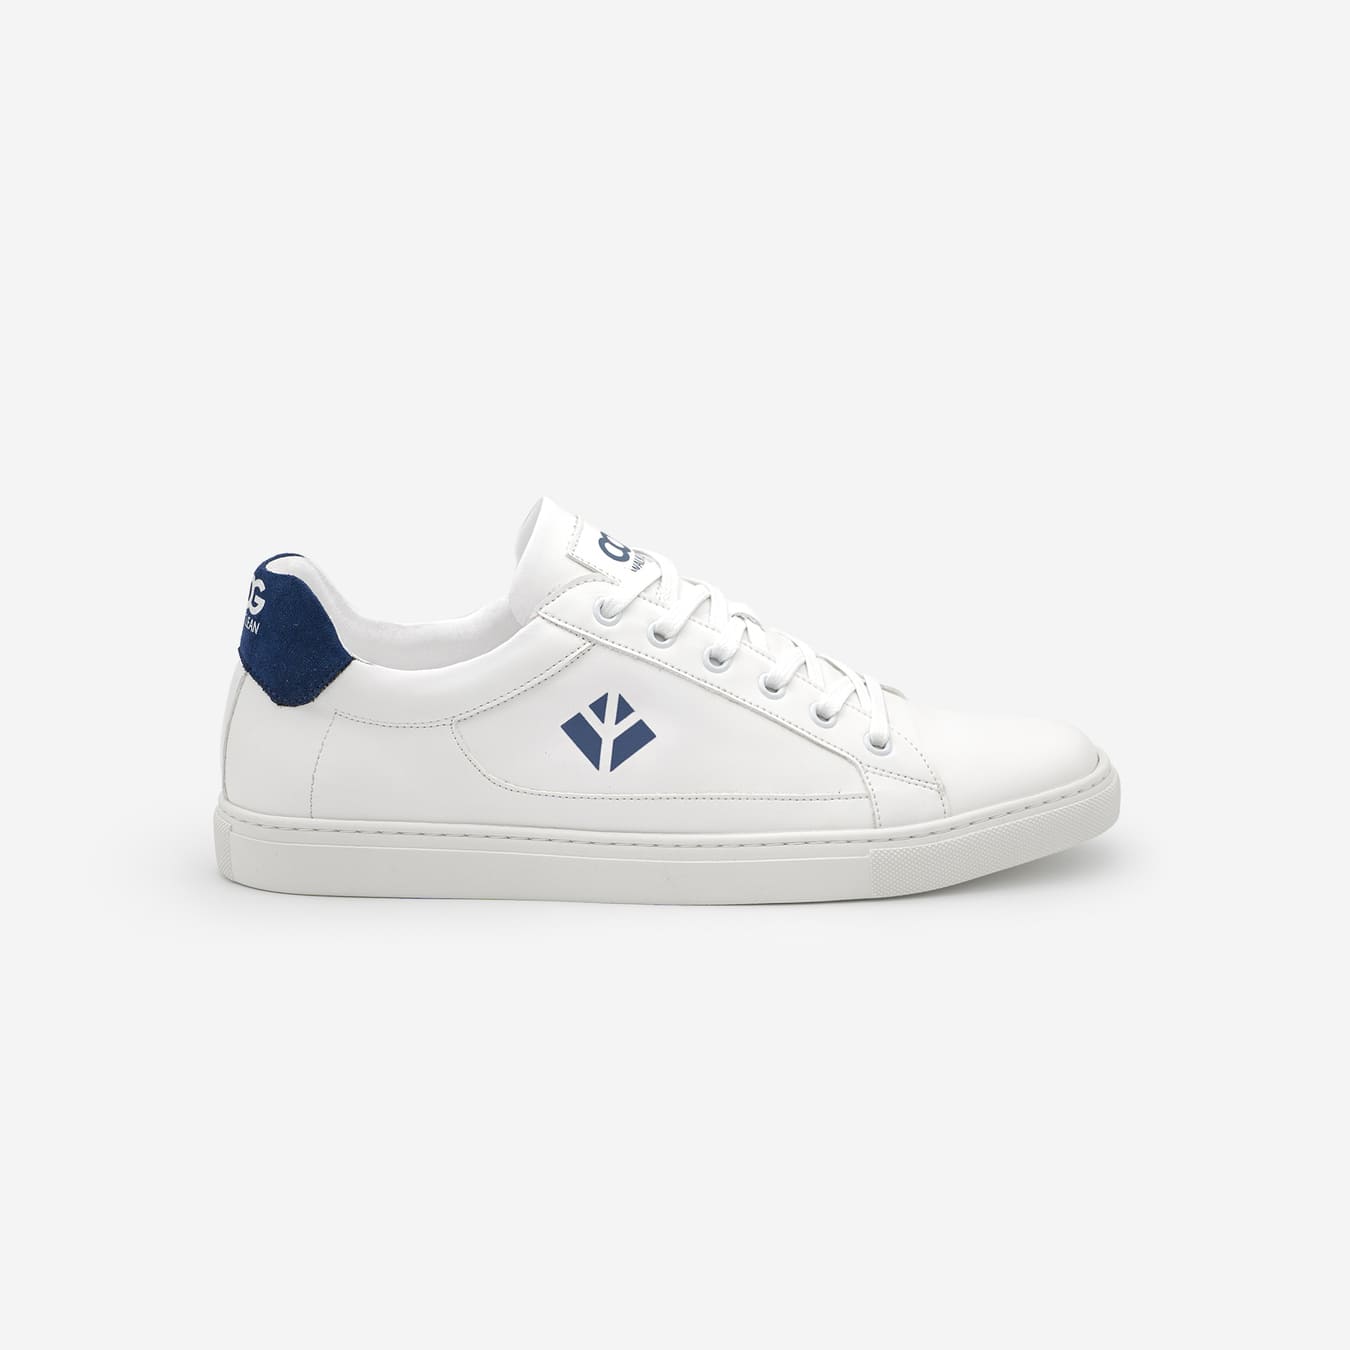 Sneakers baskets basses végan et écologique blanc bleu - Winton Cog